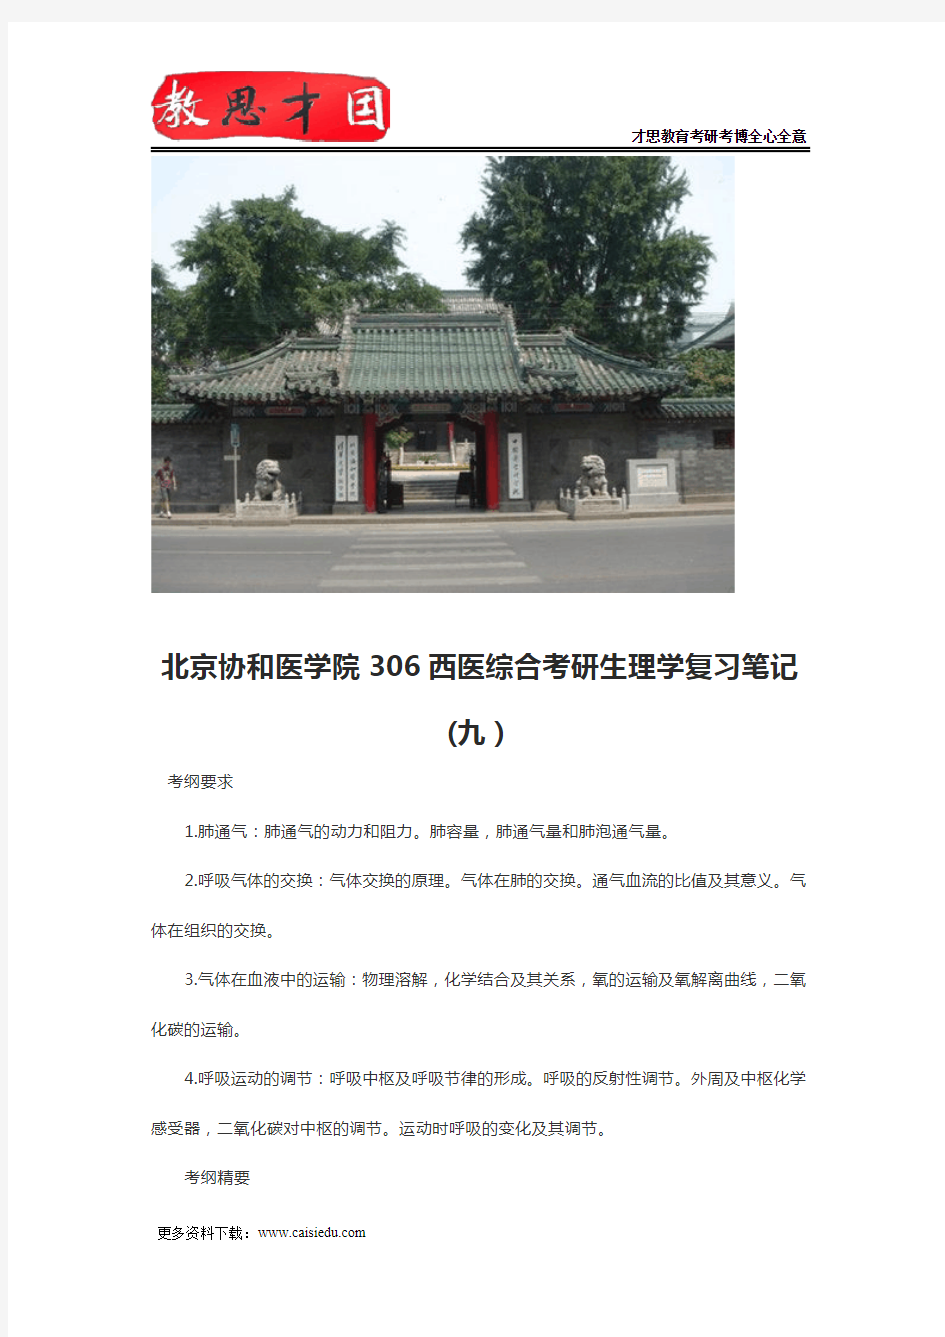 北京协和医学院306西医综合考研生理学复习笔记(九)